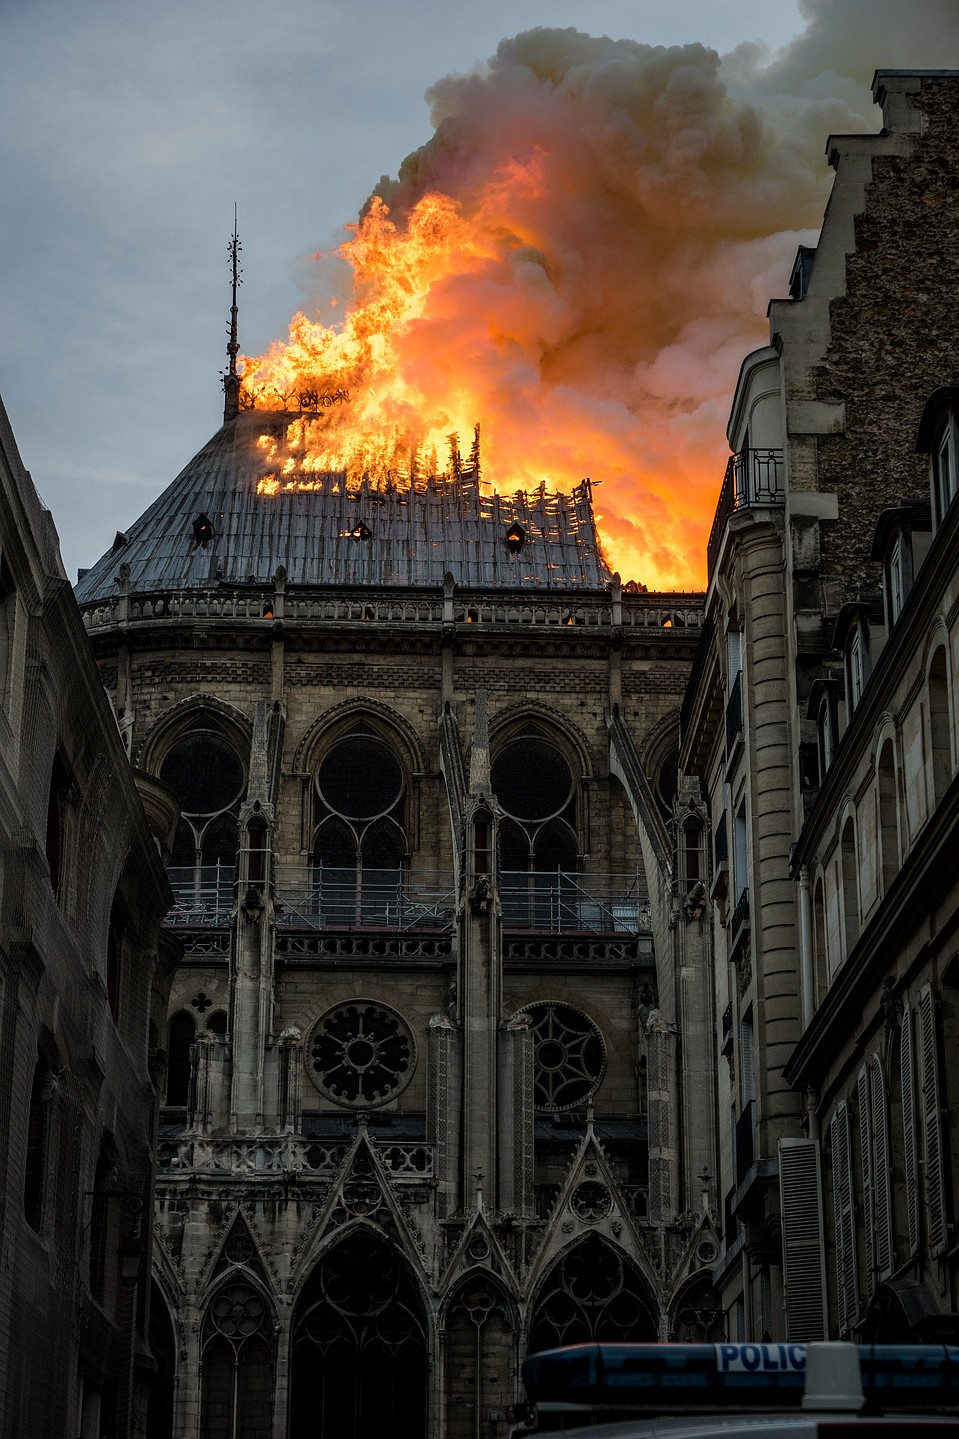 Случайное возгорание во время реставрационных работ — основная версия Фото: GLOBAL LOOK PRESS